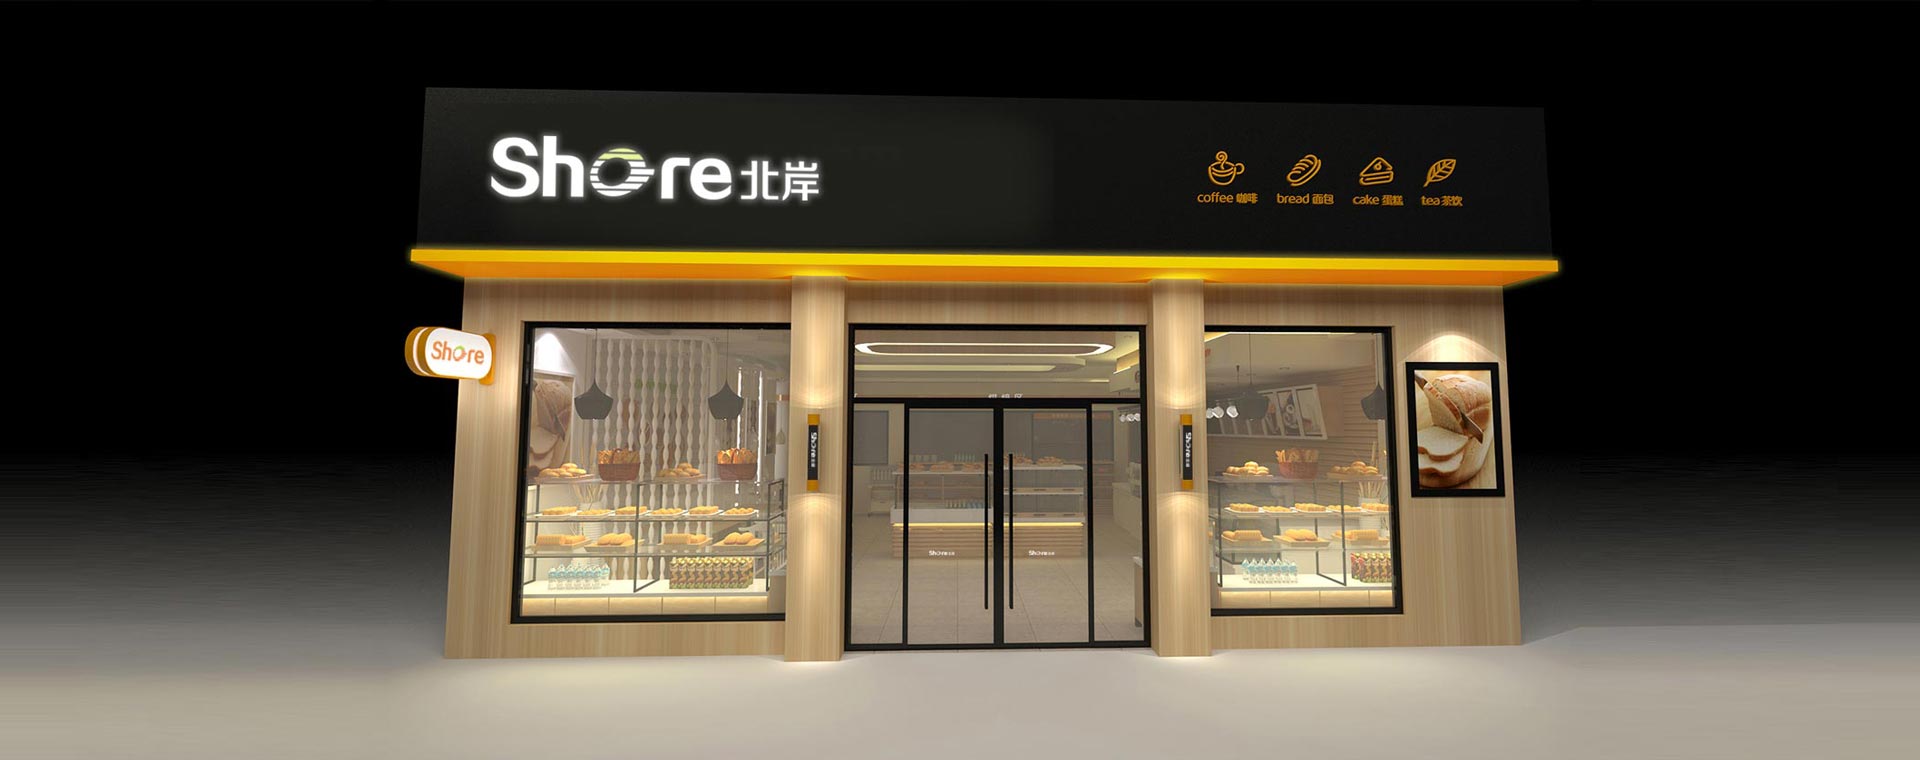 武漢面包房店面設計公司提供武漢烘焙店鋪裝修設計方案